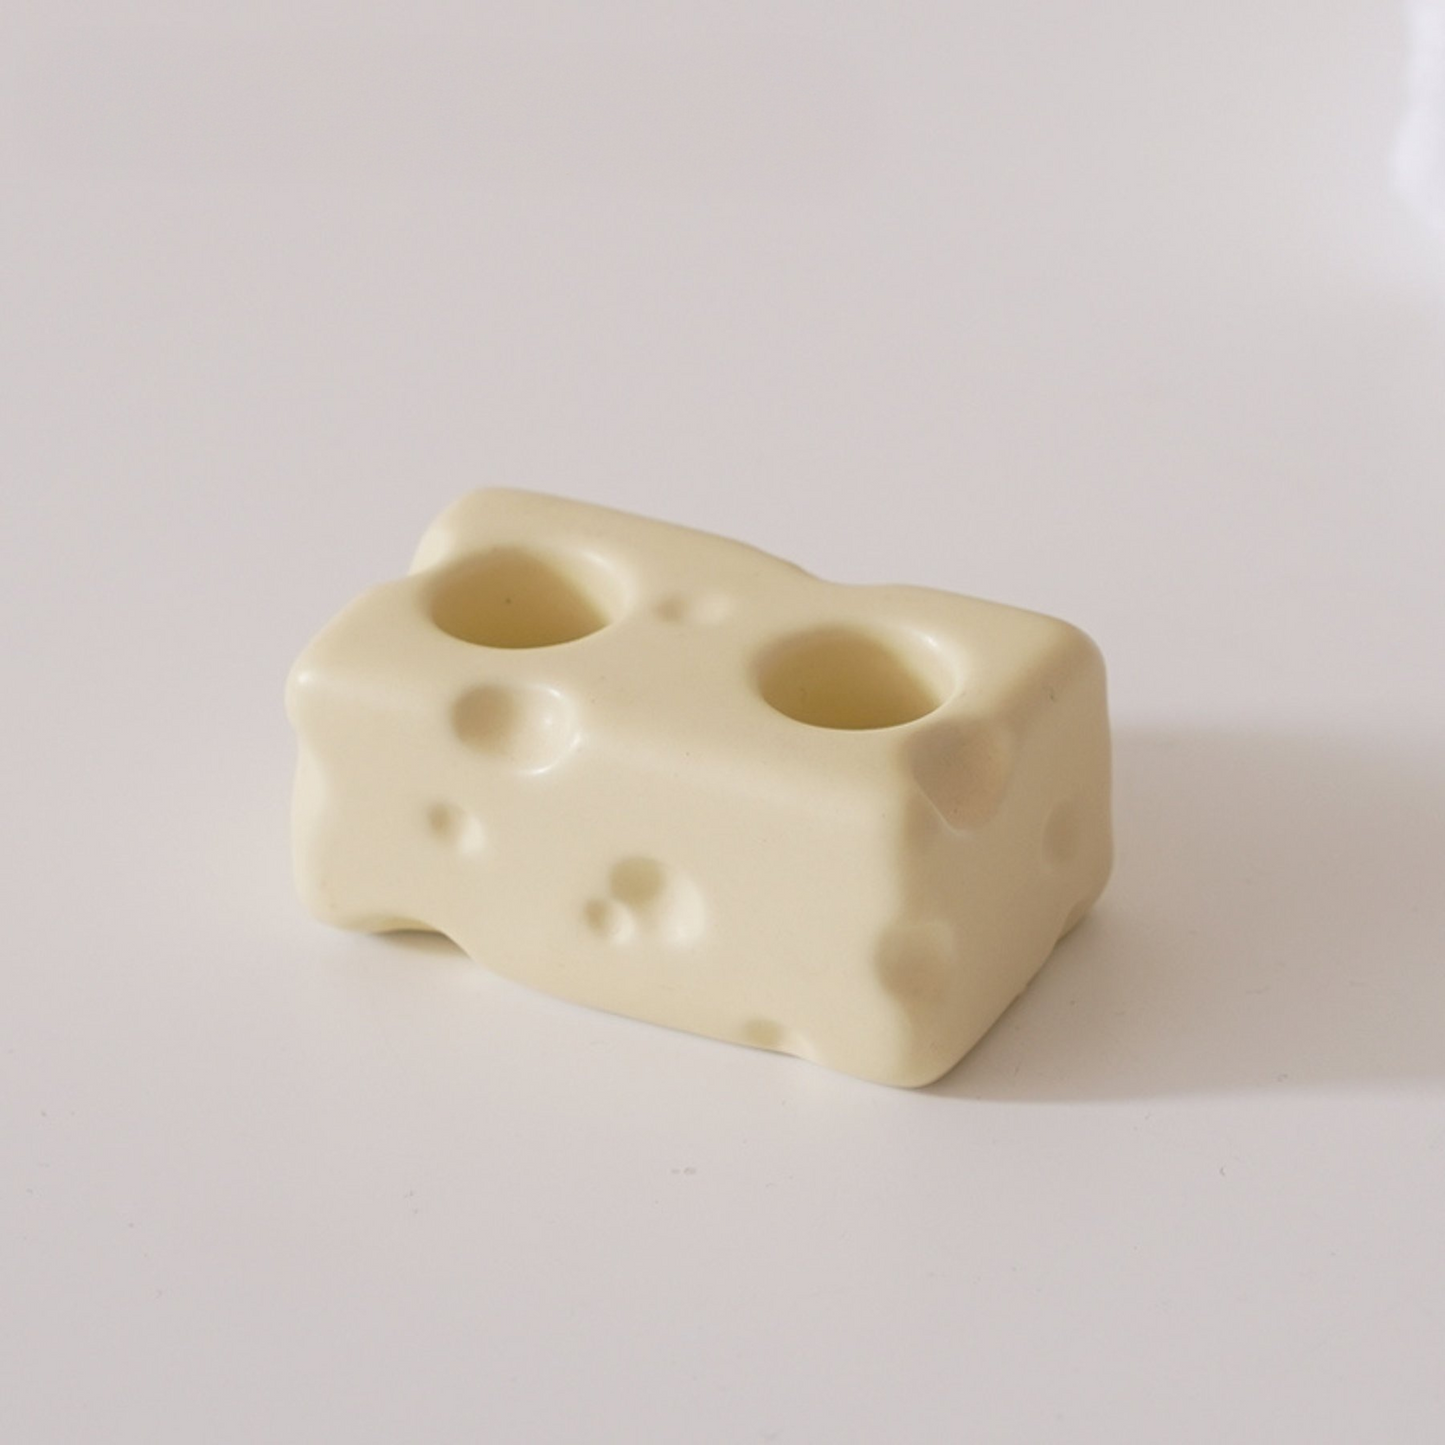 Ceramic Cheese Toothbrush Holder